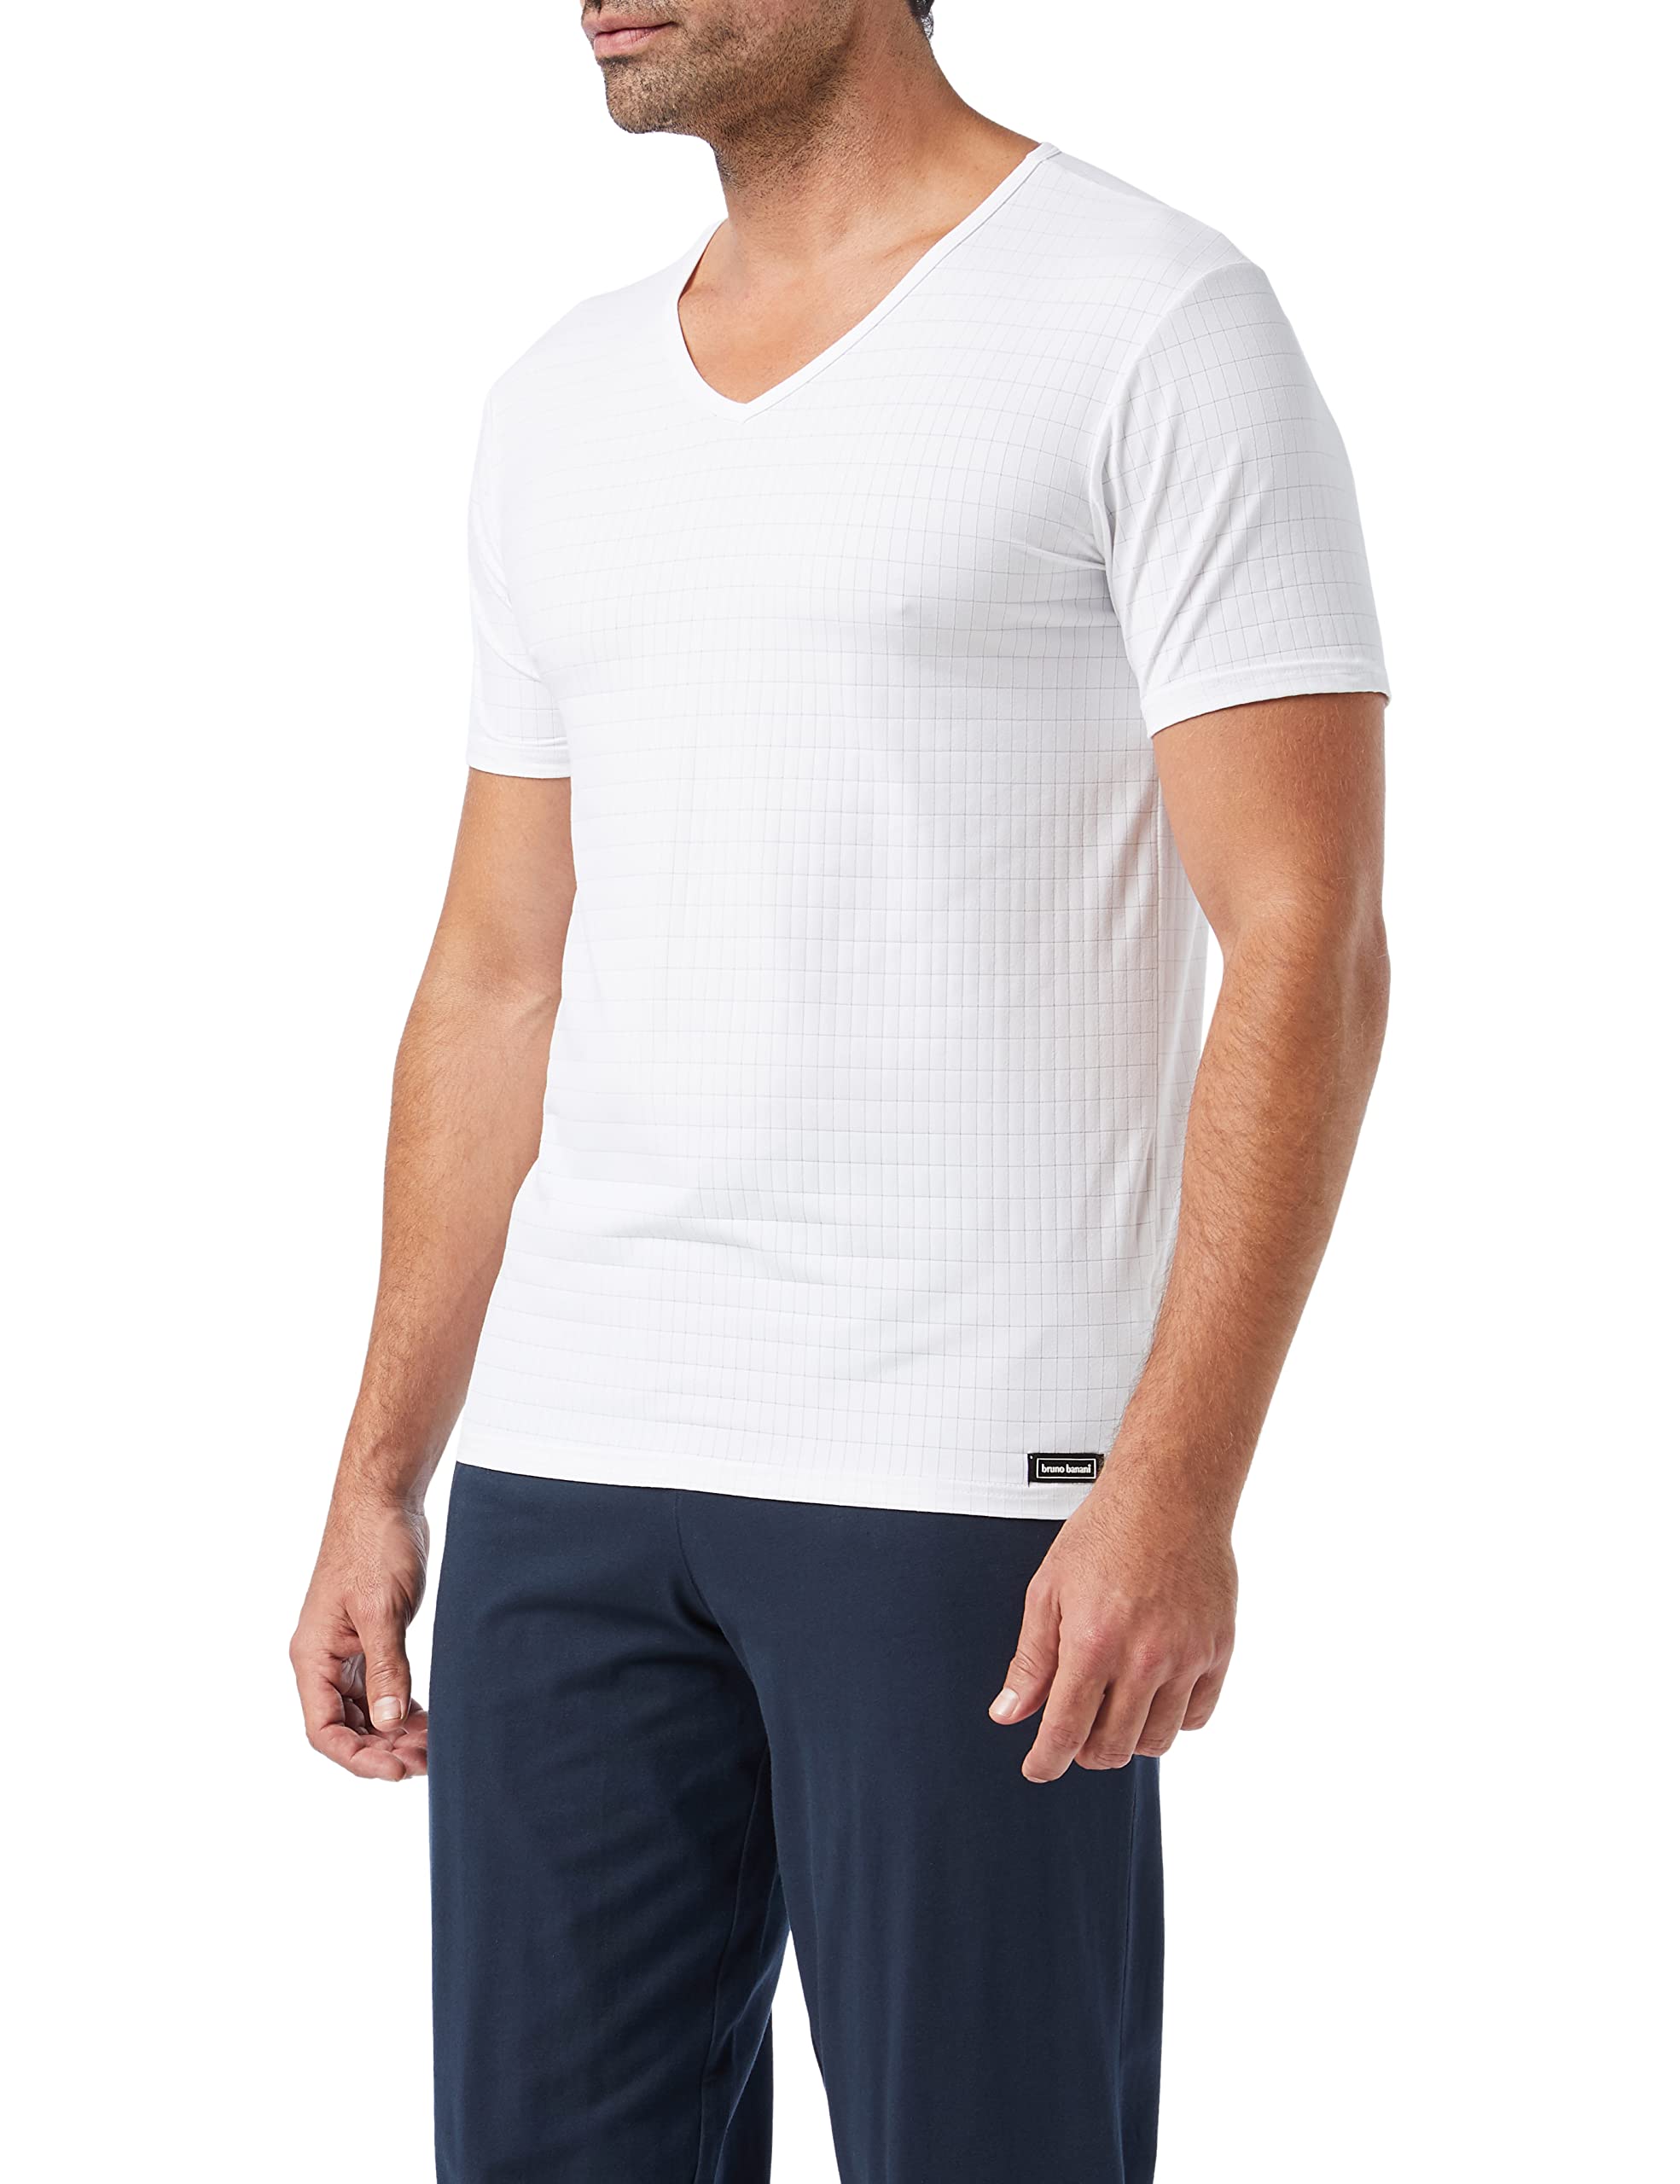 bruno banani Herren V-Shirt Check Line 2.0 Unterhemd, Weiß (Weiß Karo 1612), X-Large (Herstellergröße: XL)